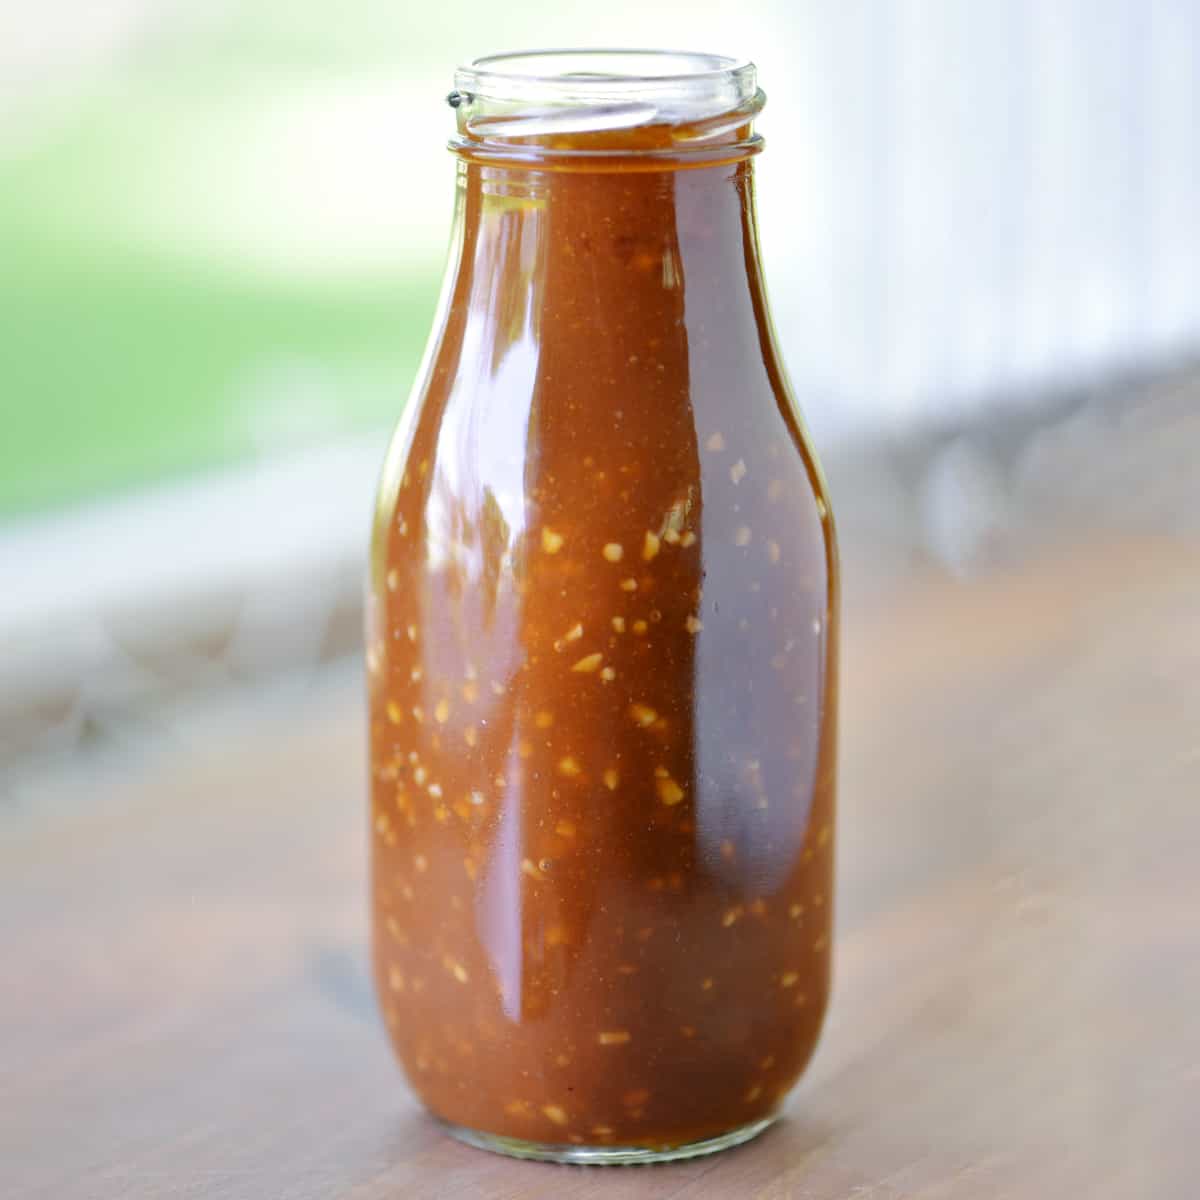 Homemade stir fry sauce in a glass jar.